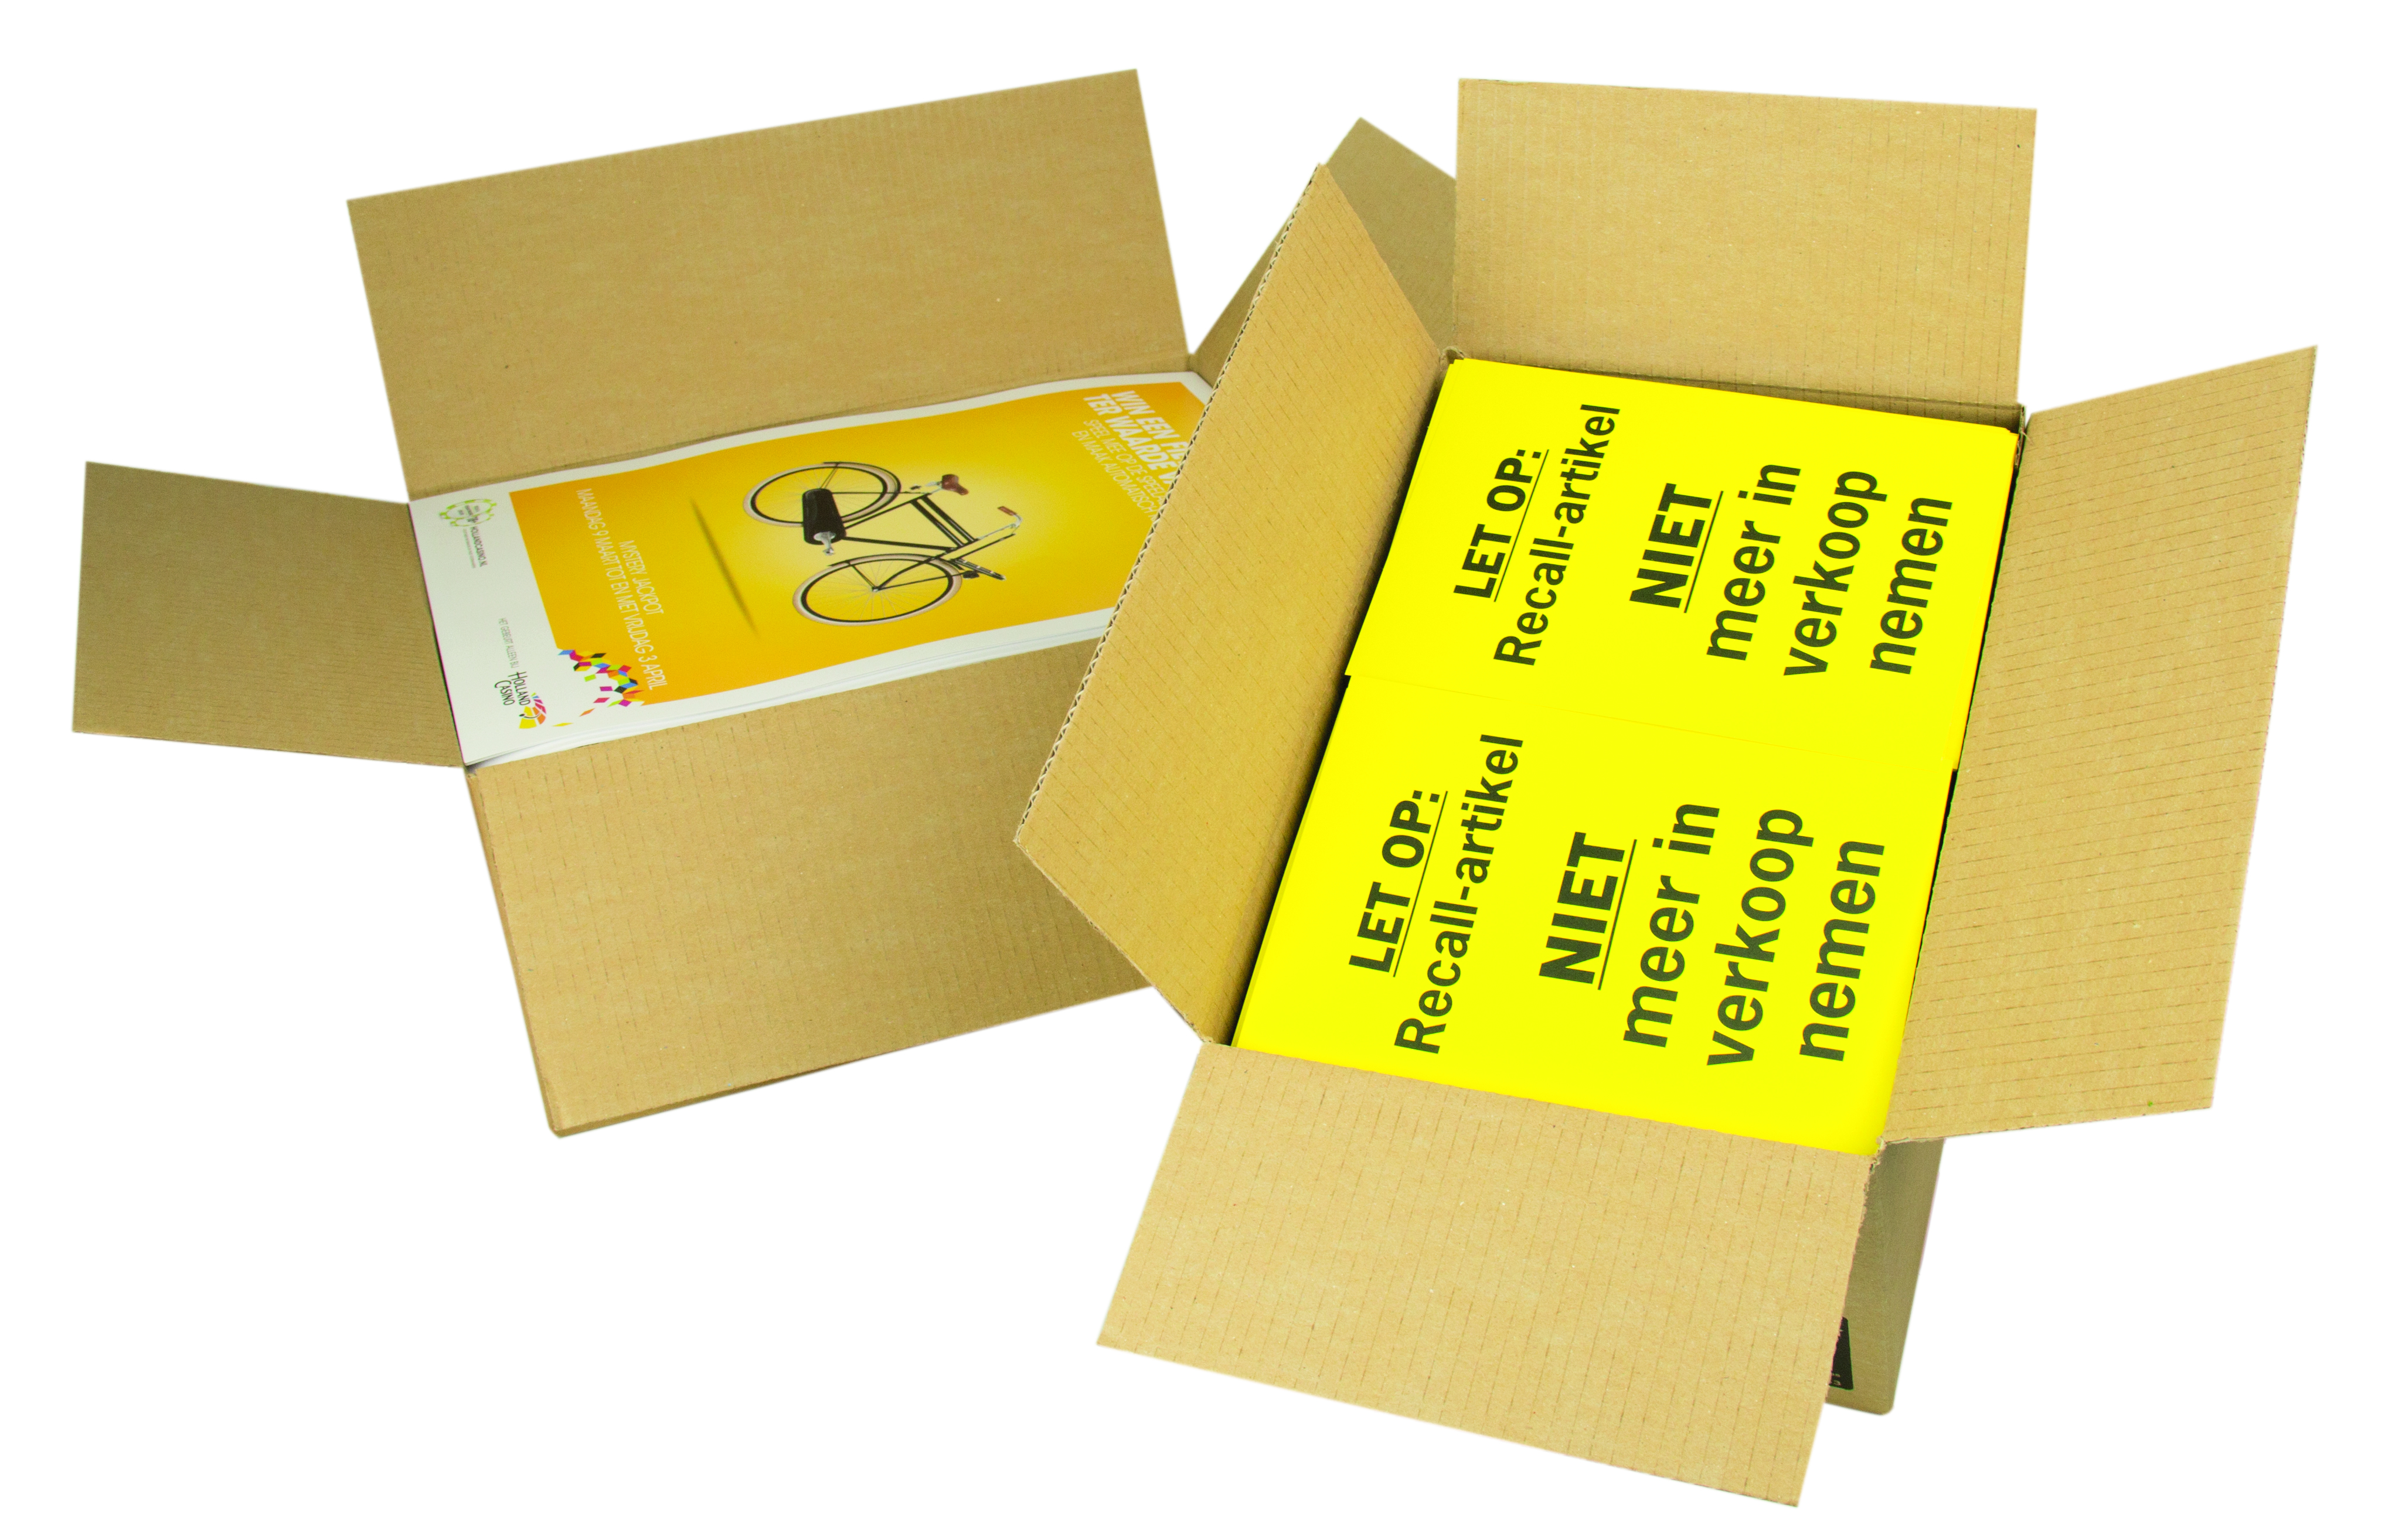 Caisses et boîtes pour documents en formats DIN Large choix de boîtes et caisses pour emballer, protéger et expédier tous vos documents.